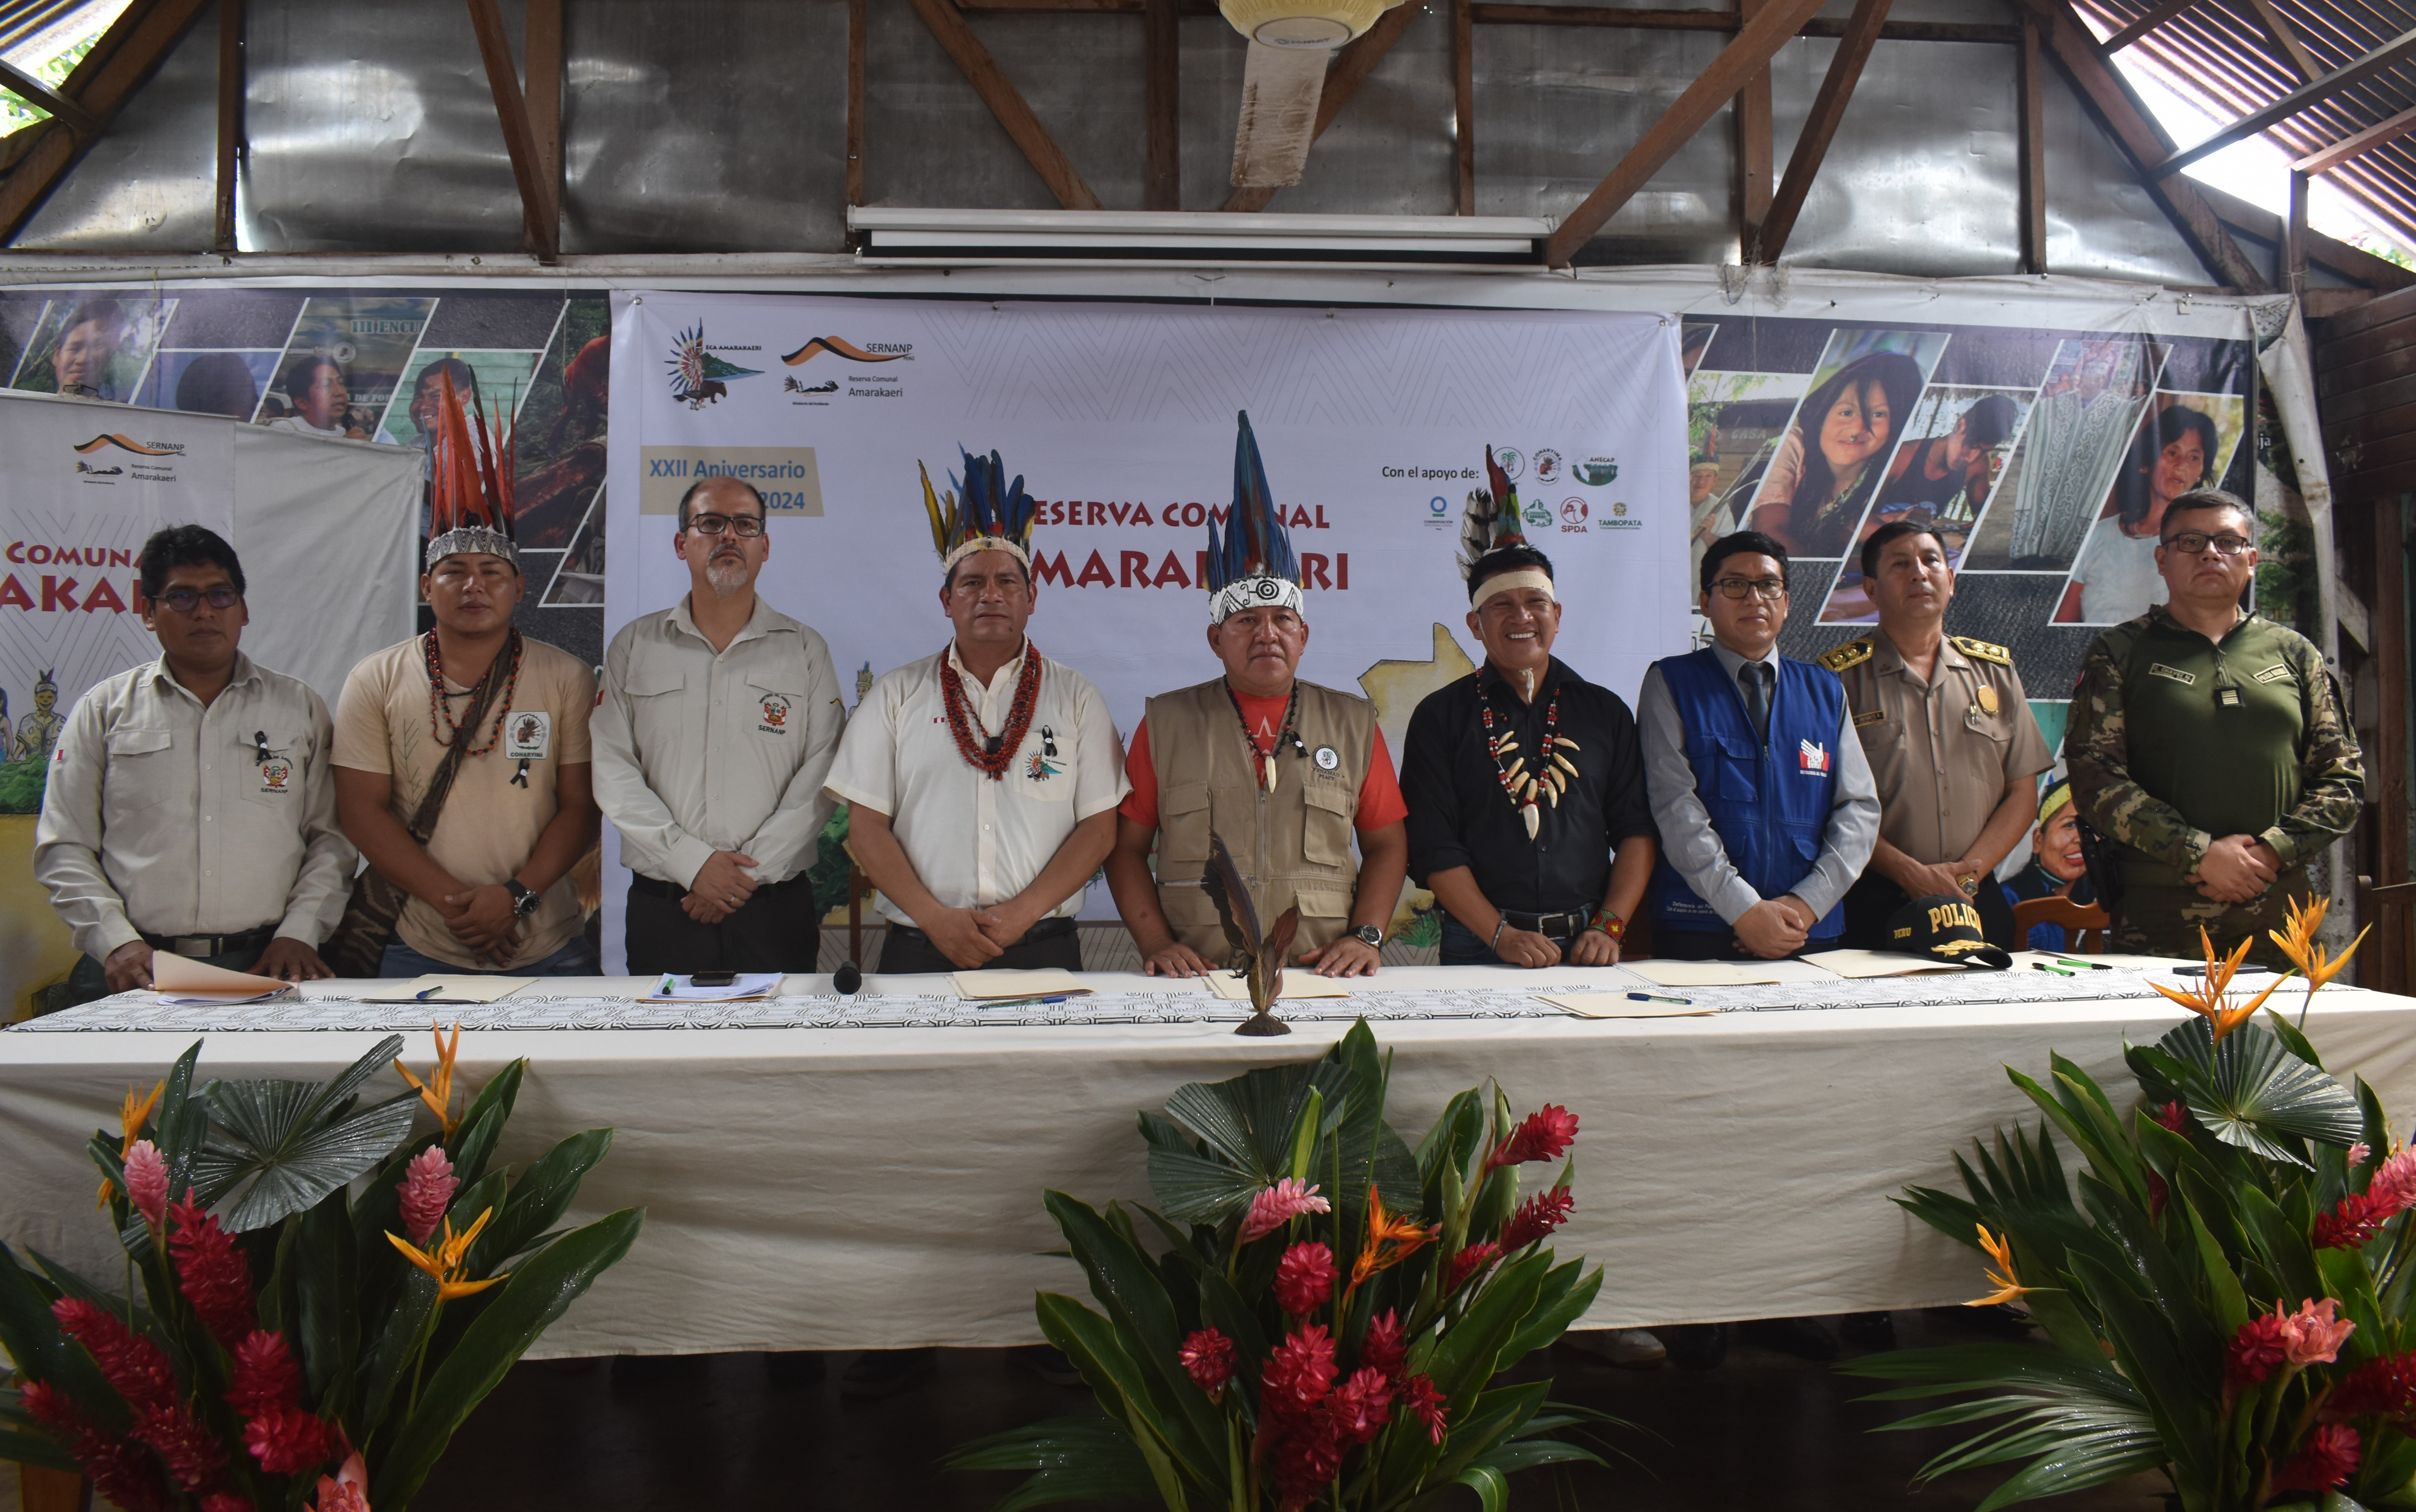 La conferencia de prensa contó con la participación de representantes de entidades públicas y líderes indígenas.